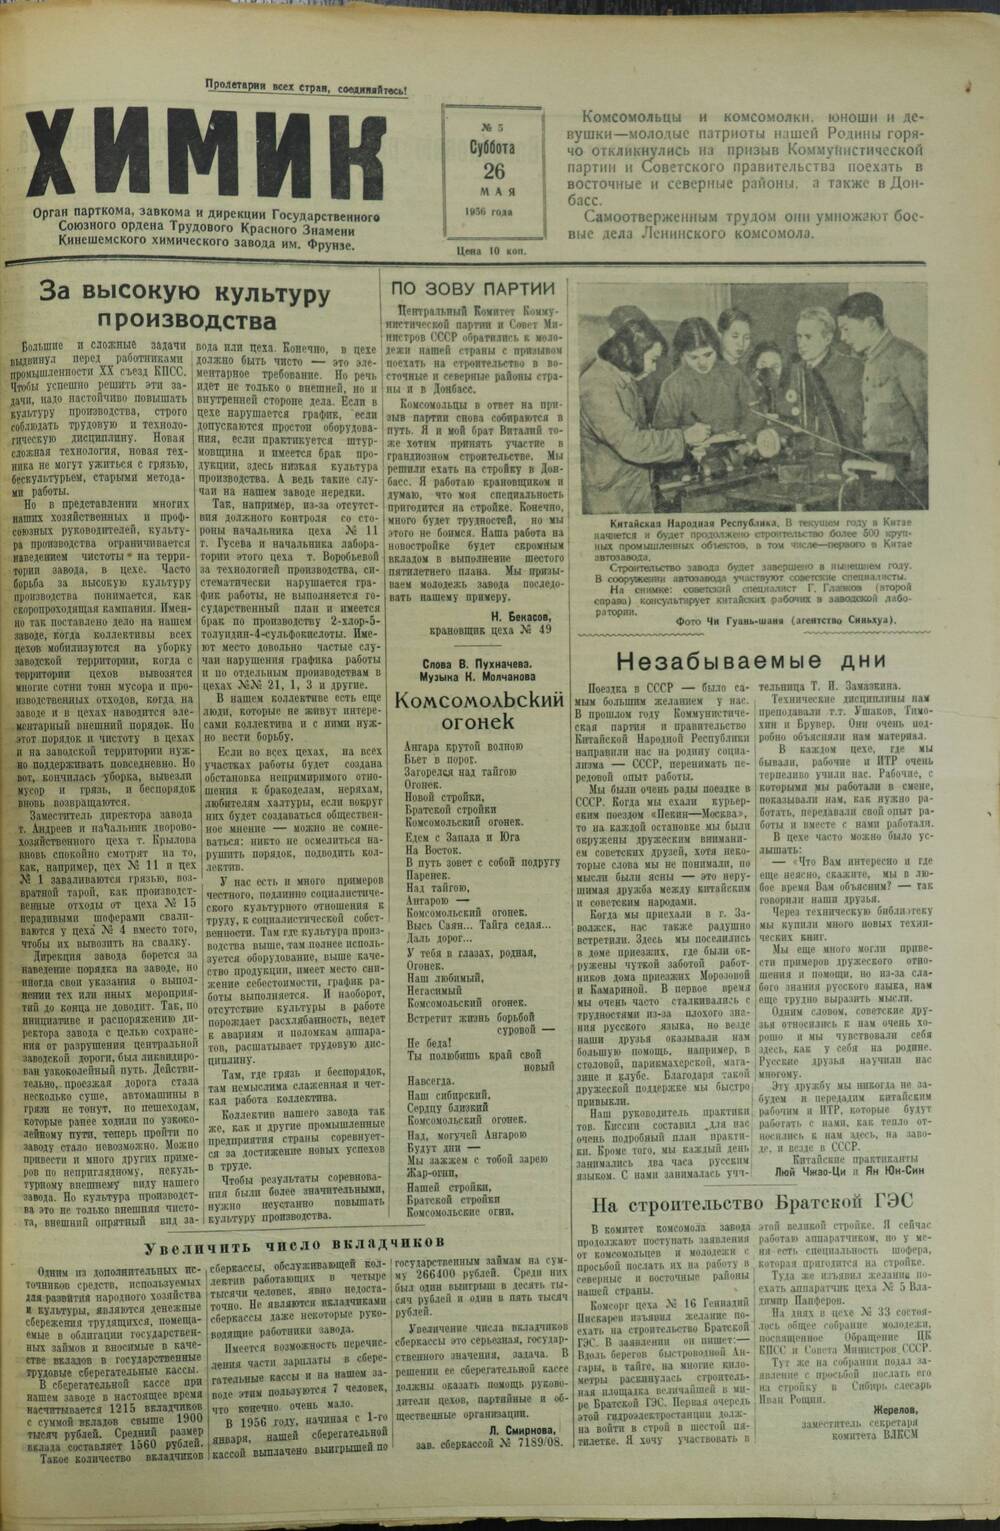 Газета «Химик» № 5 от 26 мая 1956 года.